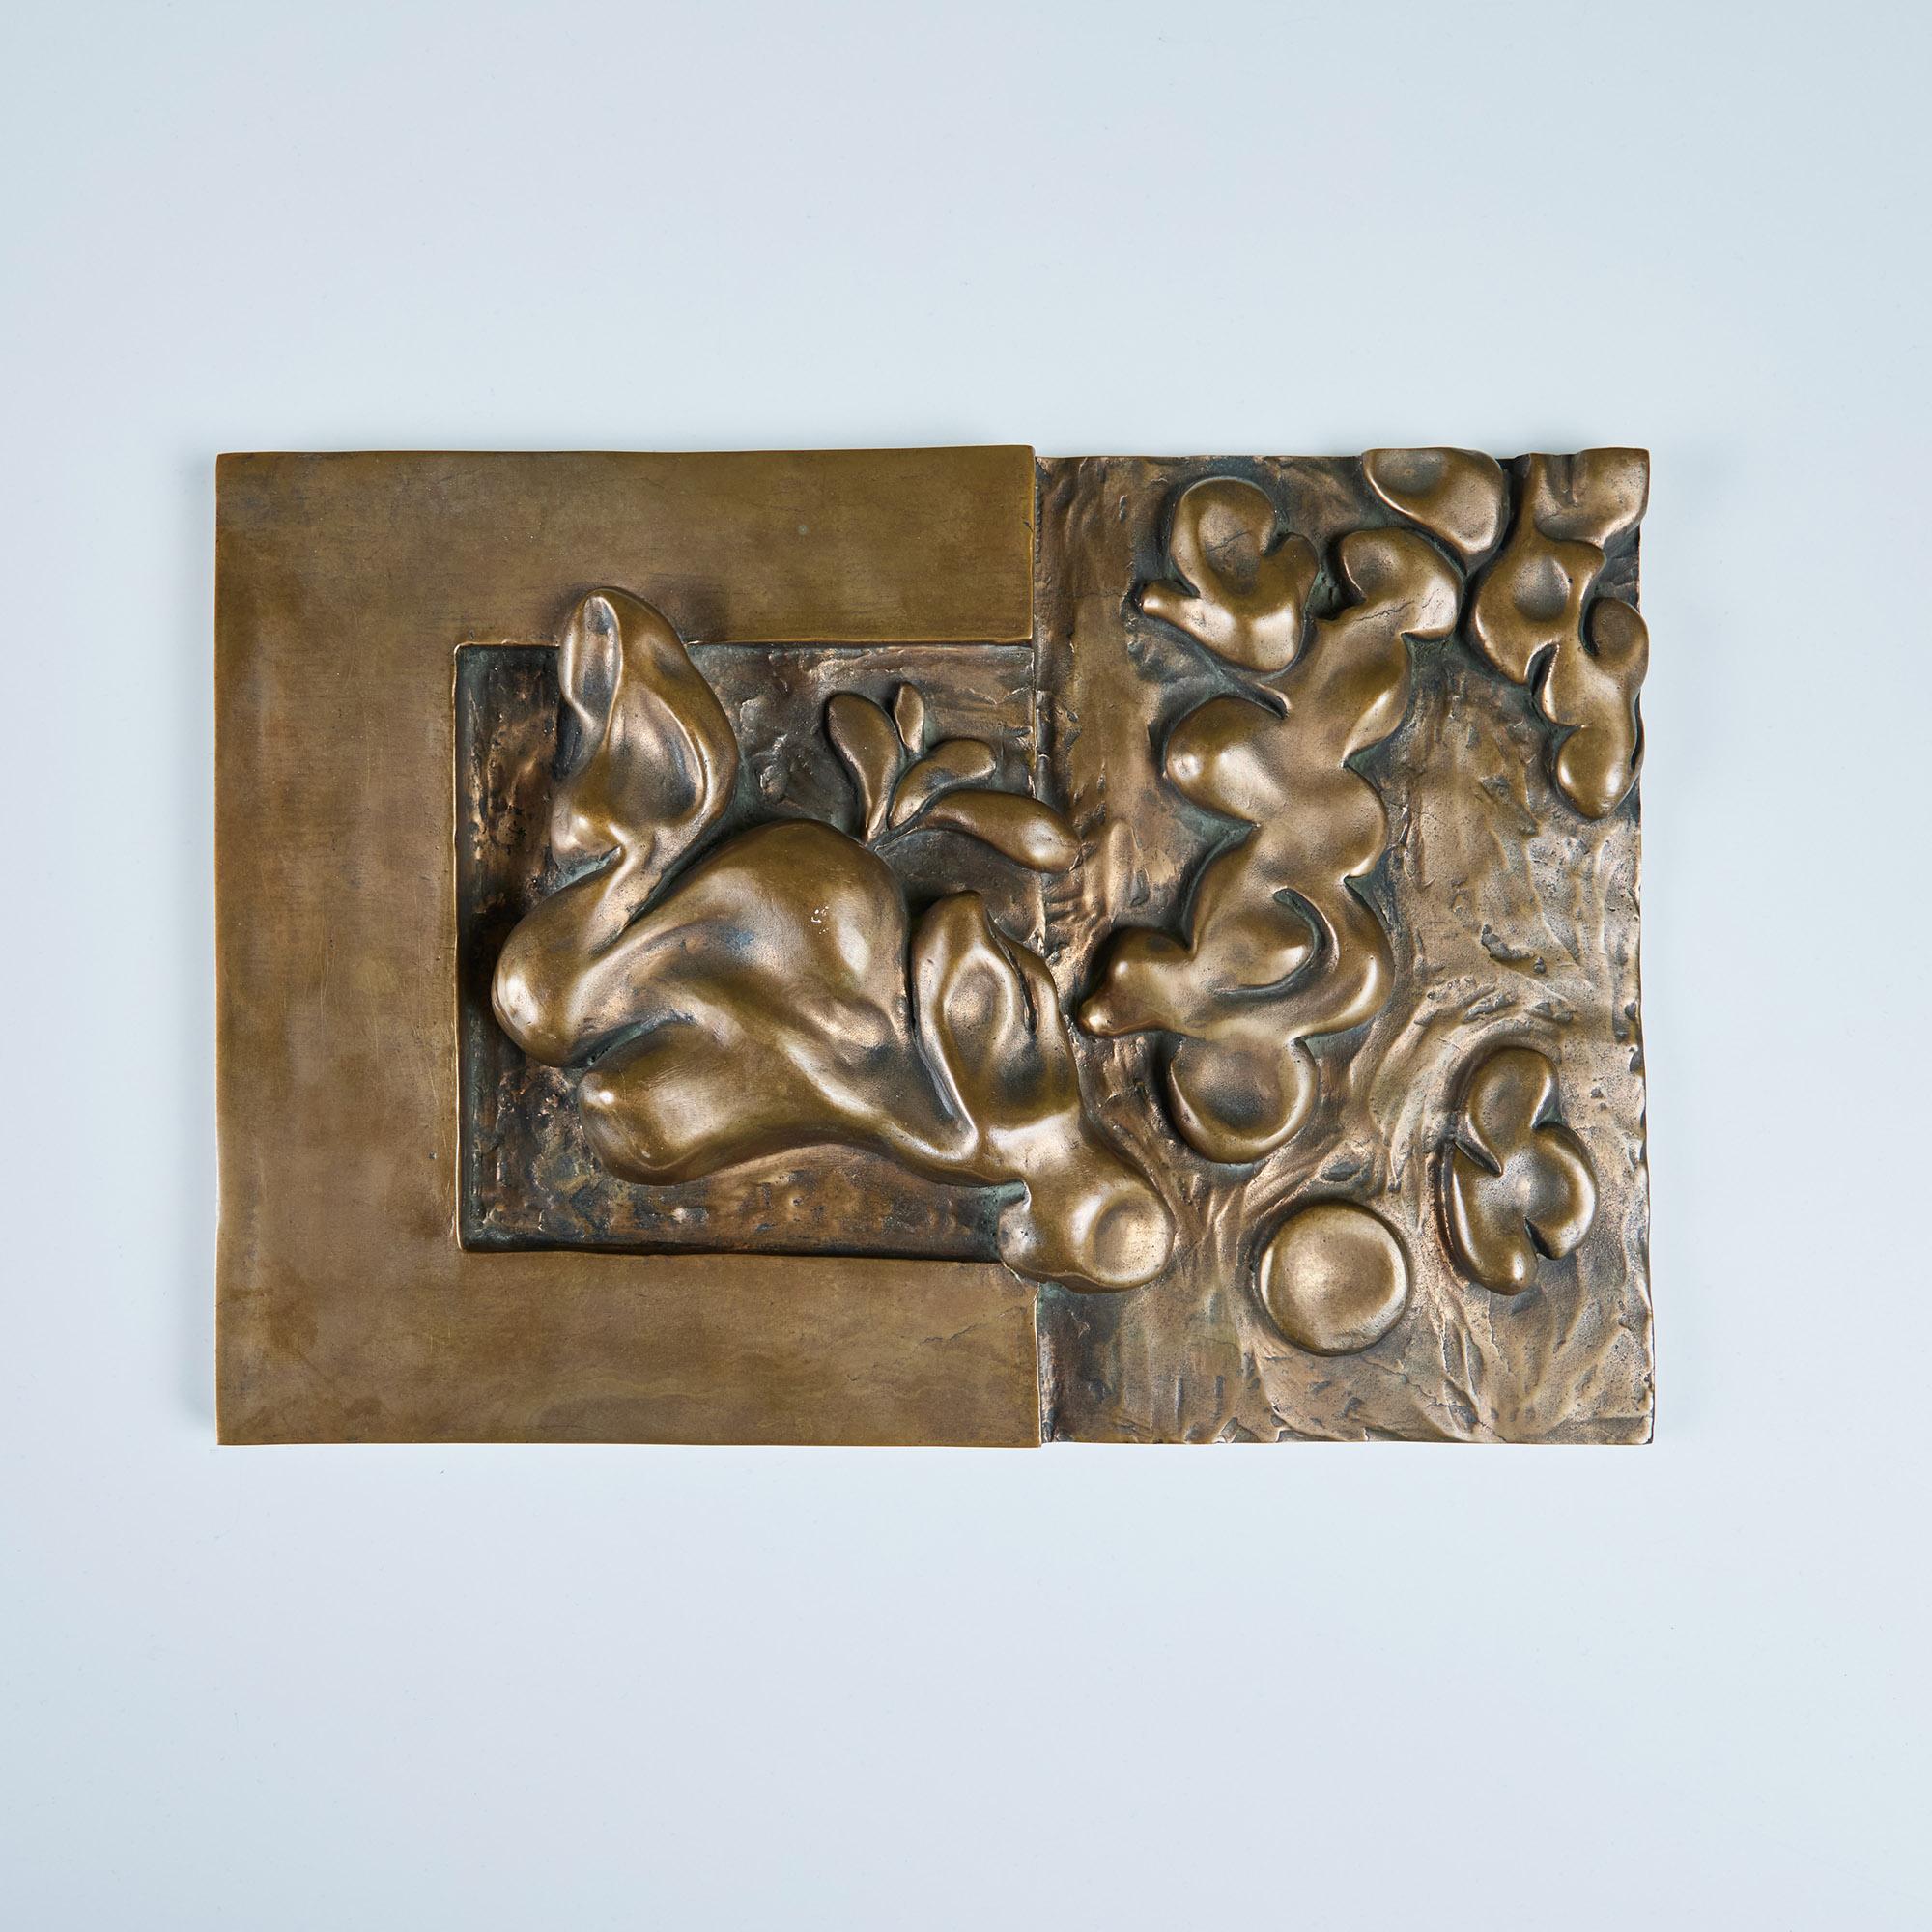 Plaque décorative en bronze à boîtier abstrait dans le style d'Edgar Britton. Cette pièce sculpturale lourde présente des figures en trois dimensions. Une amusante suspension murale ou une sculpture de table.

Dimensions
13